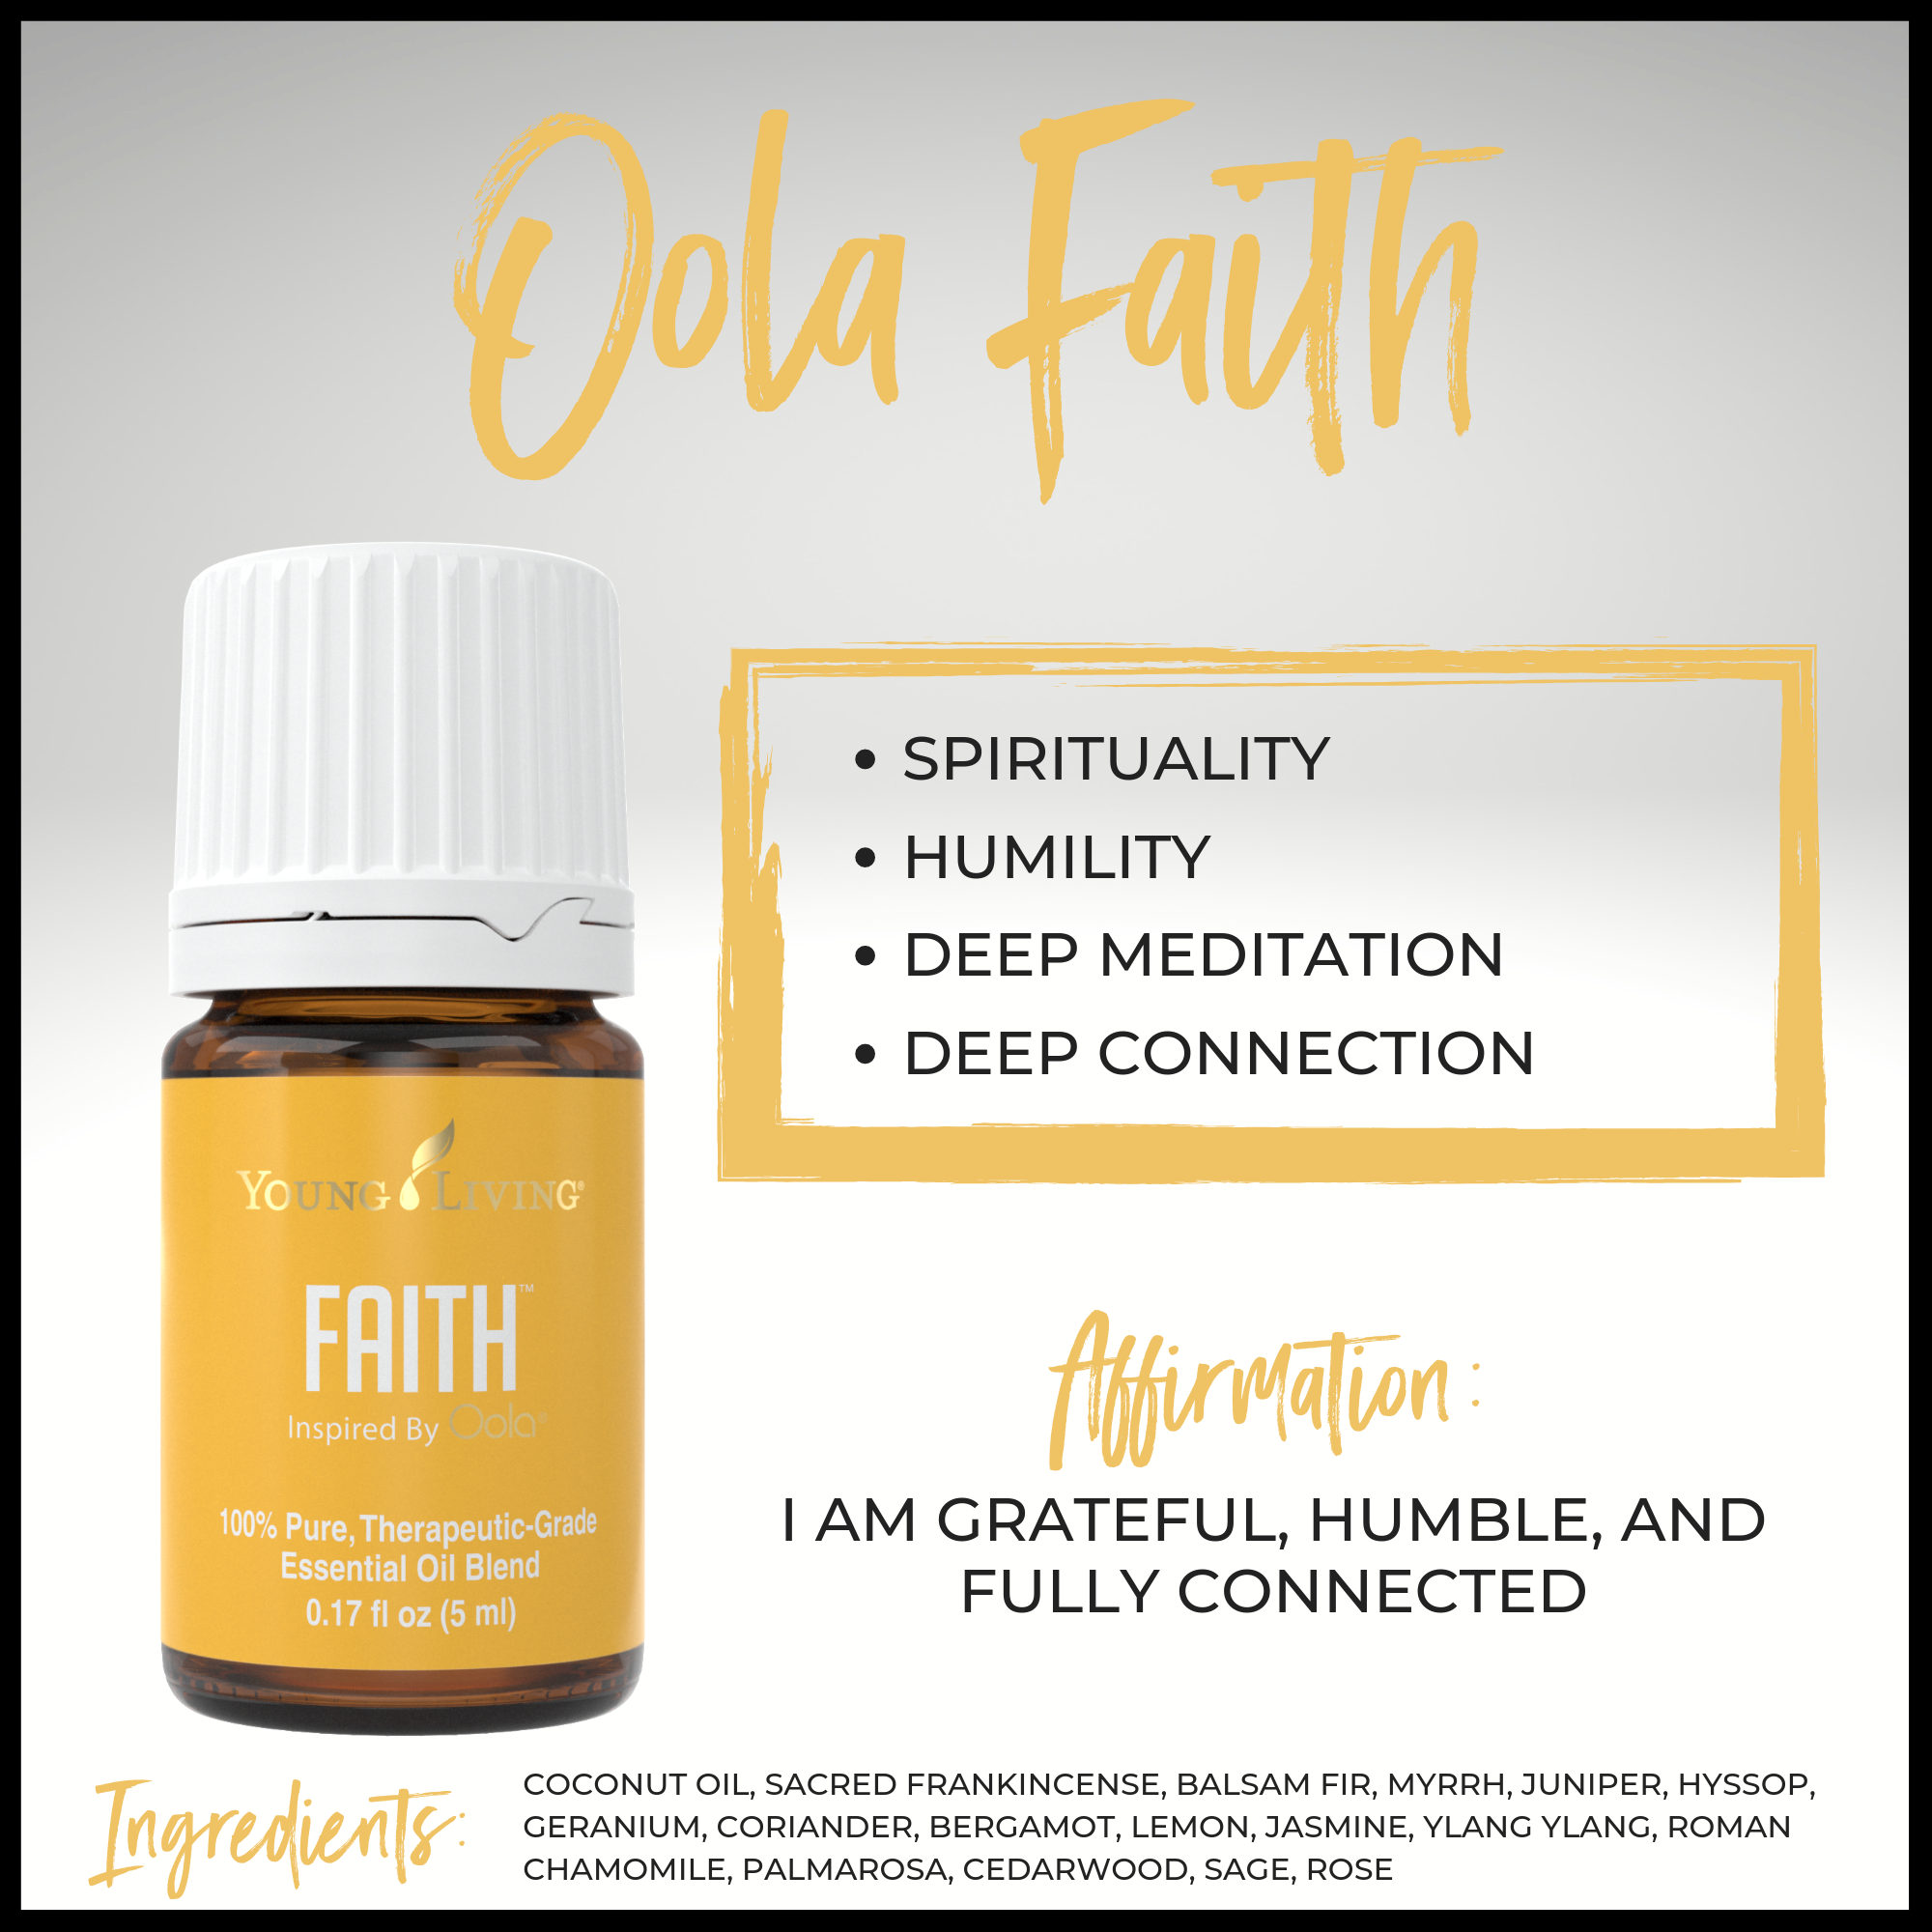 Oola Faith